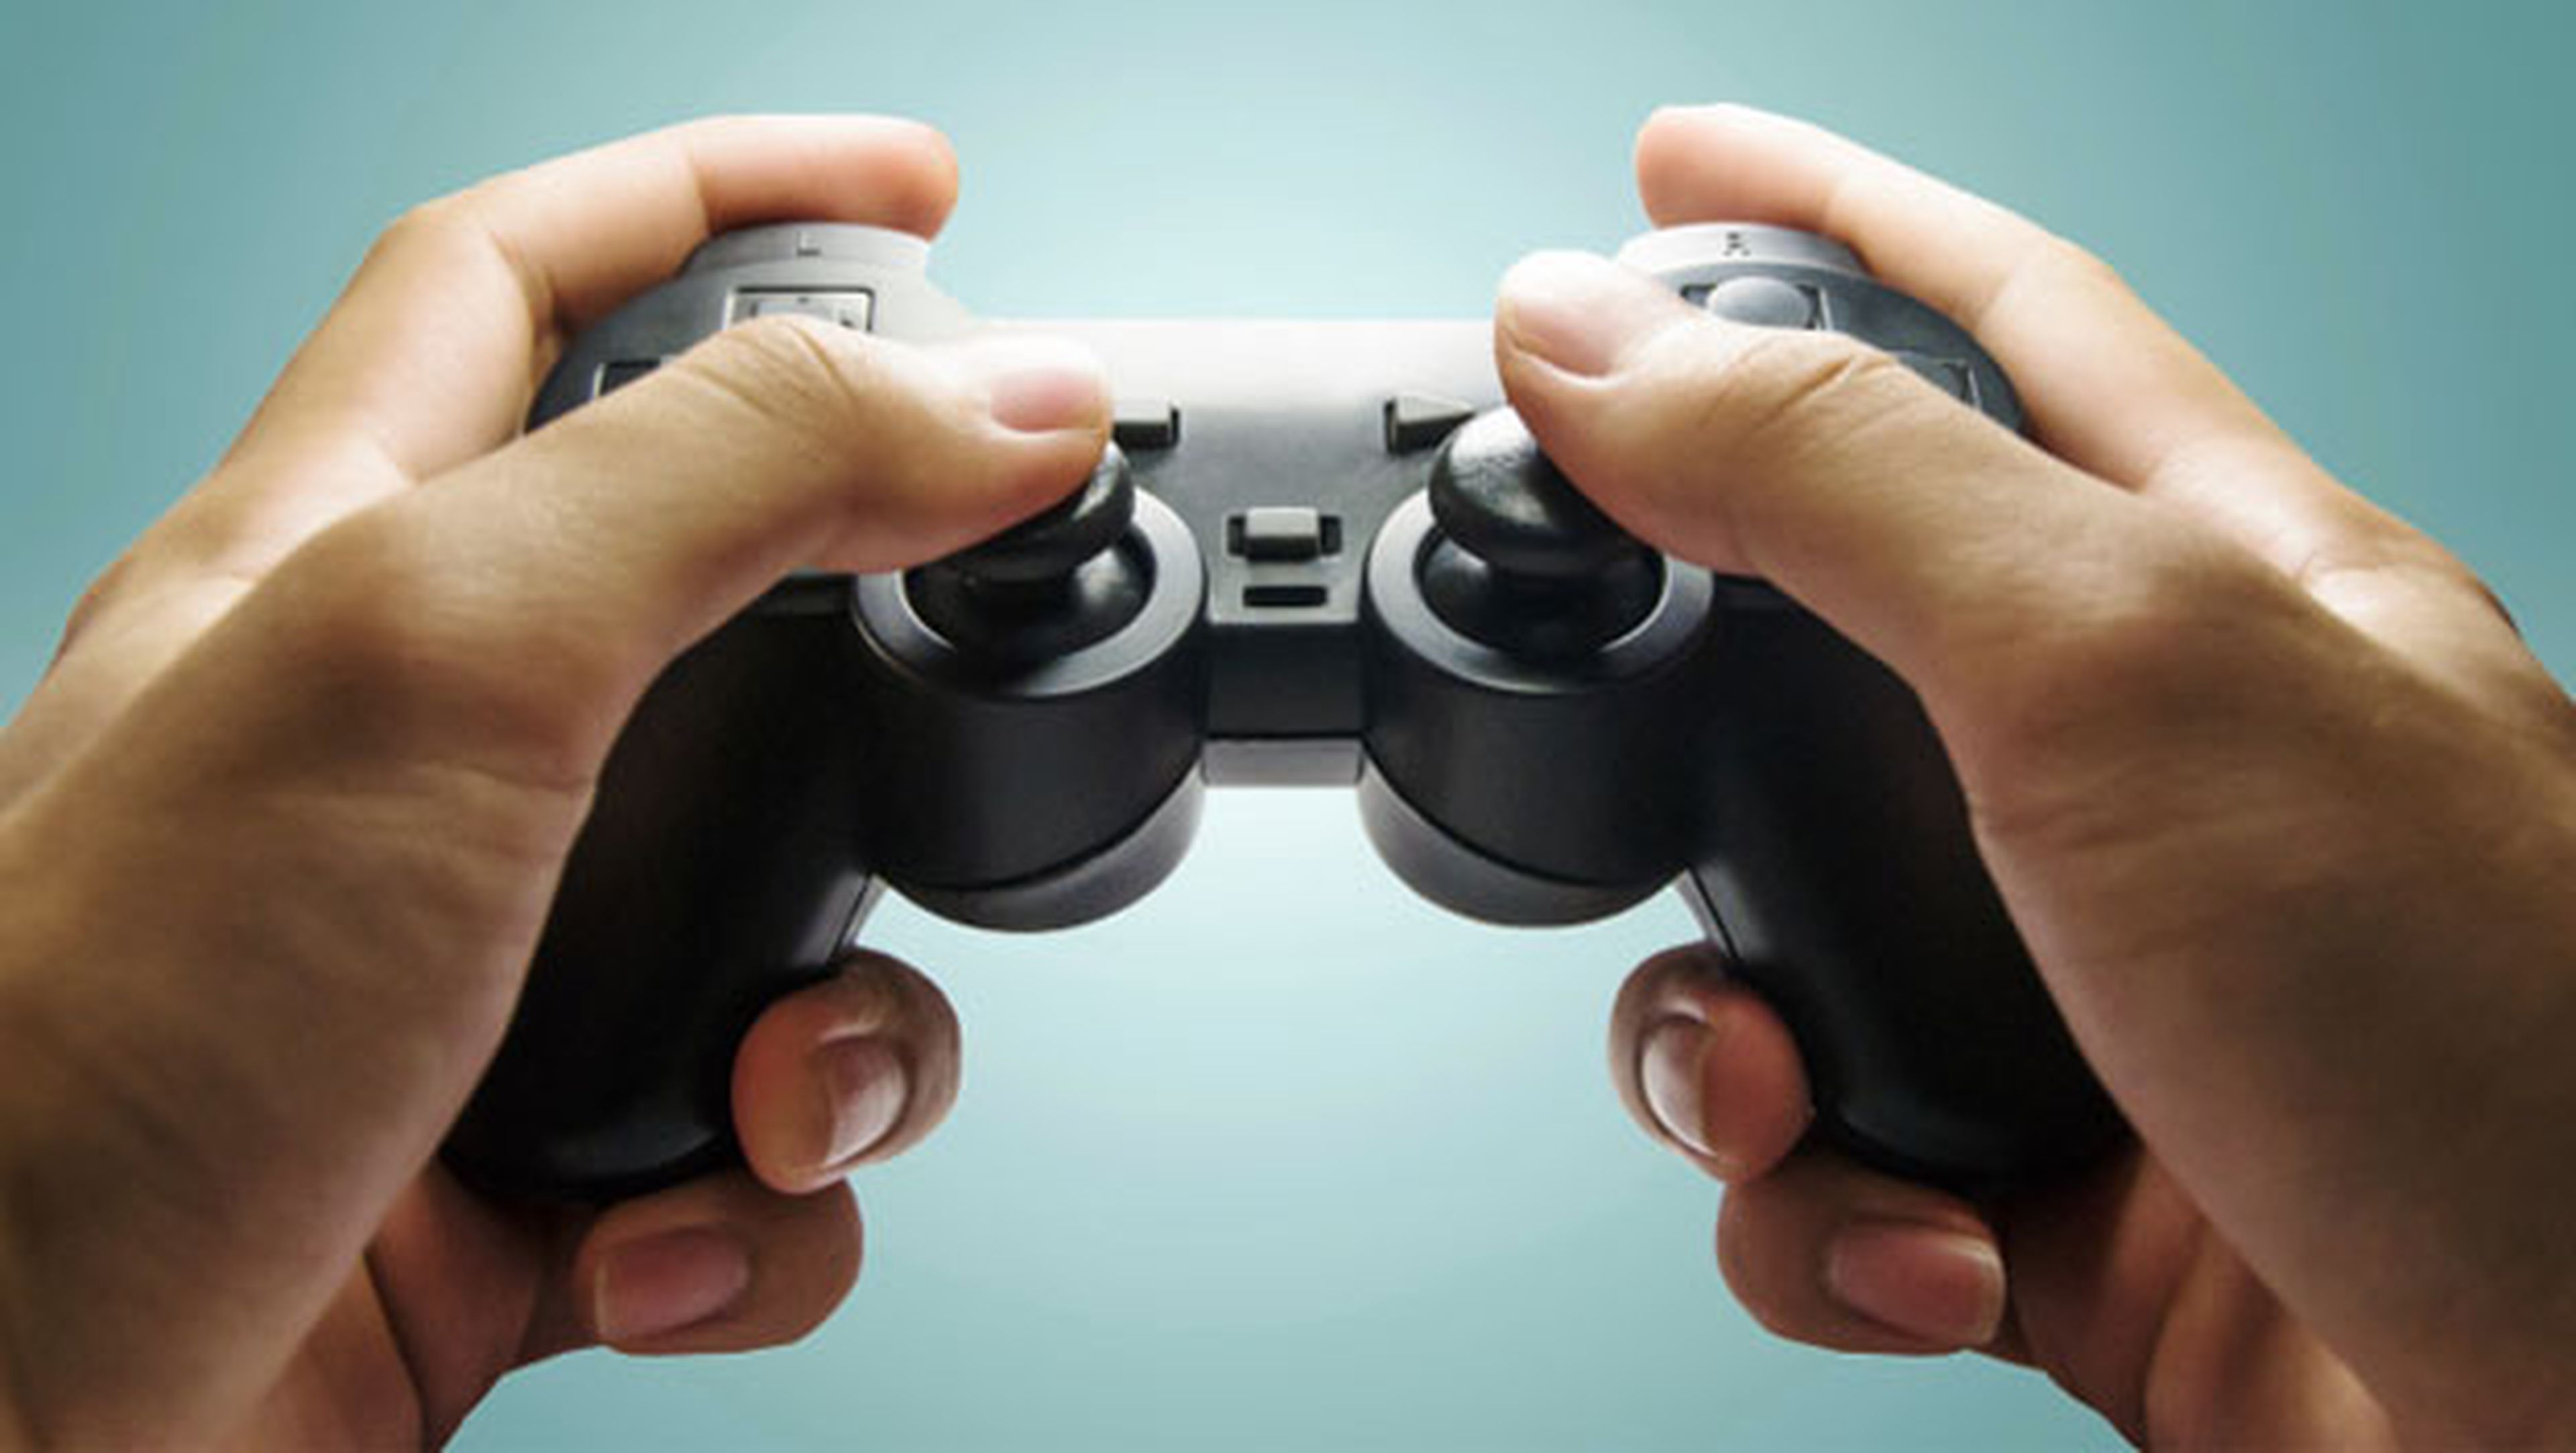 Jugar a videojuegos Hobbies tener vida más sana productiva